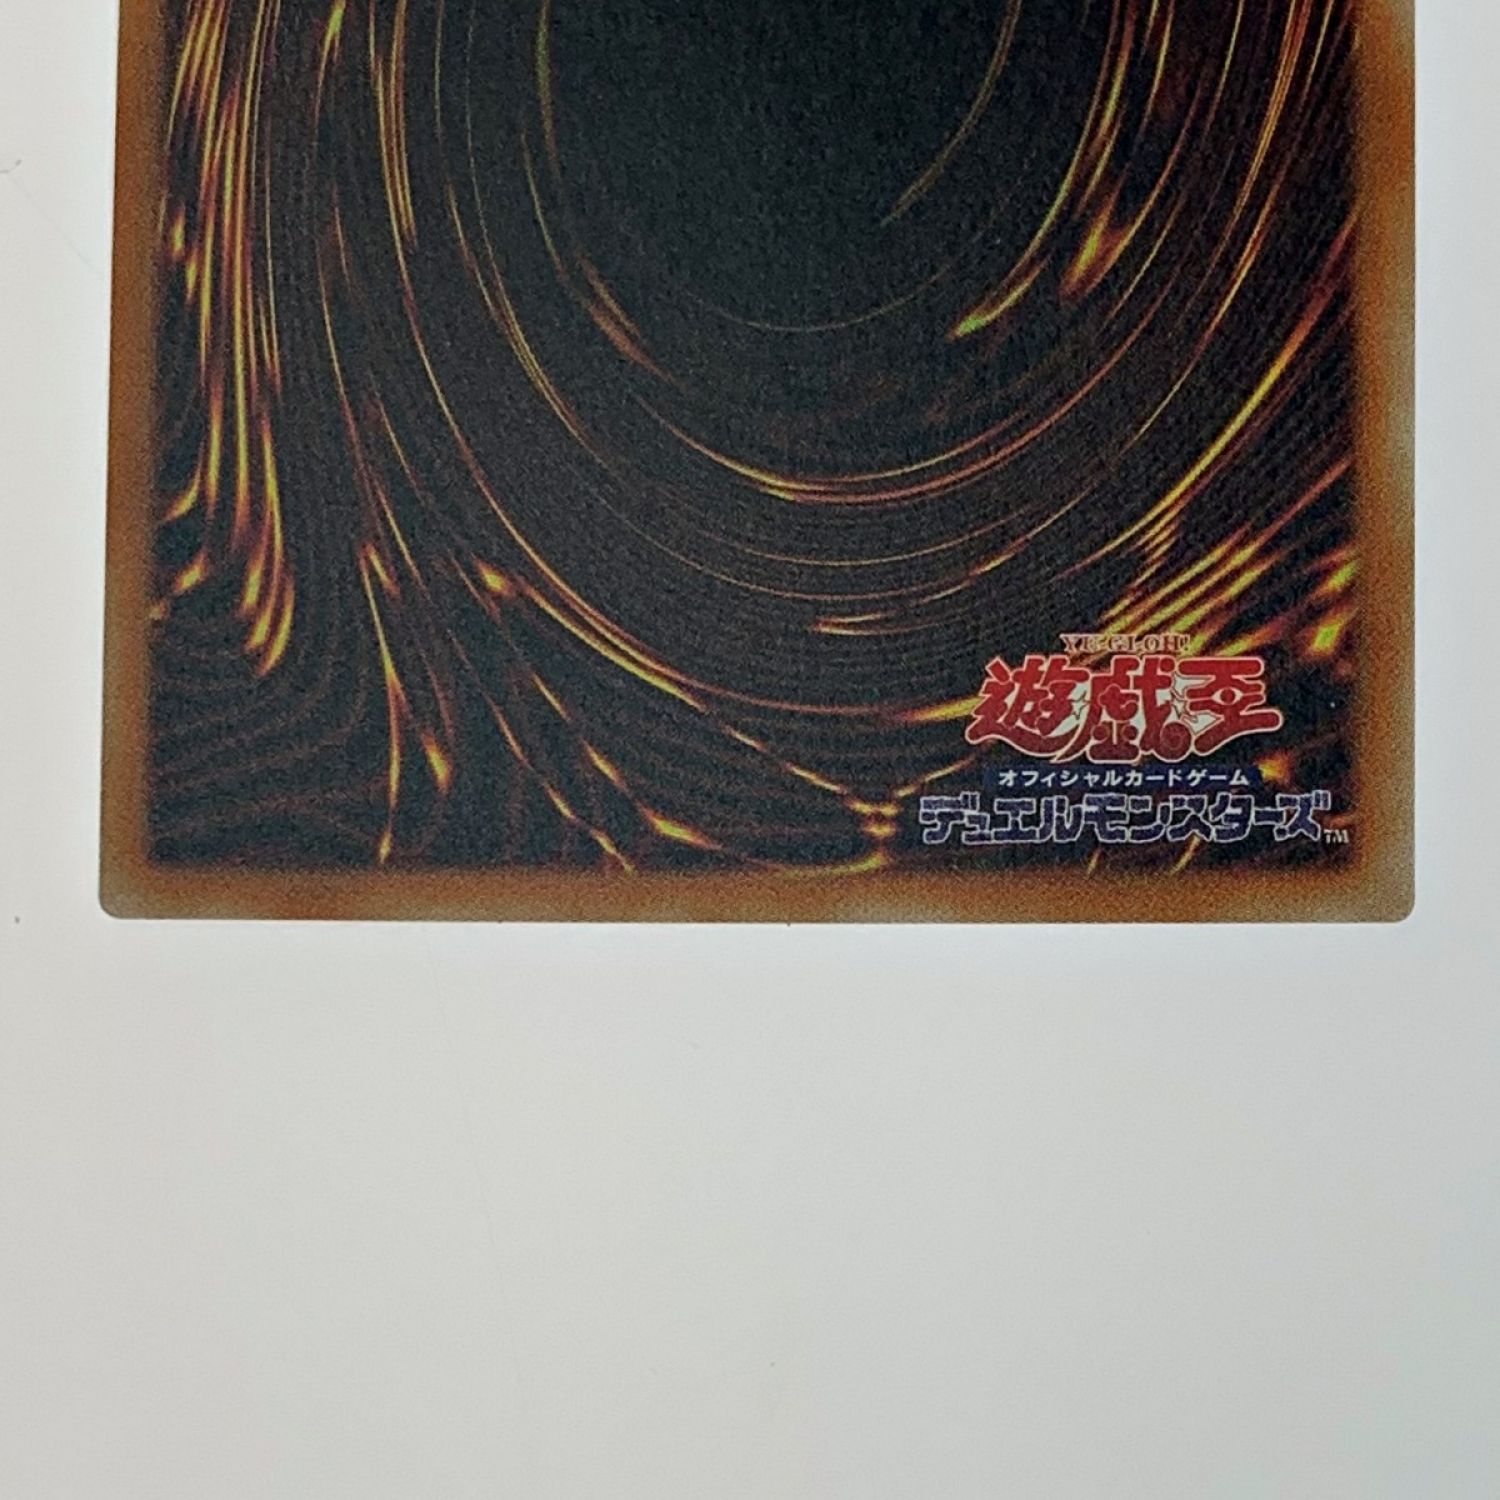 6商品備考トレカ 遊戯王 20CP-JPS05 ブラック・ローズ・ドラゴン 20thシークレット